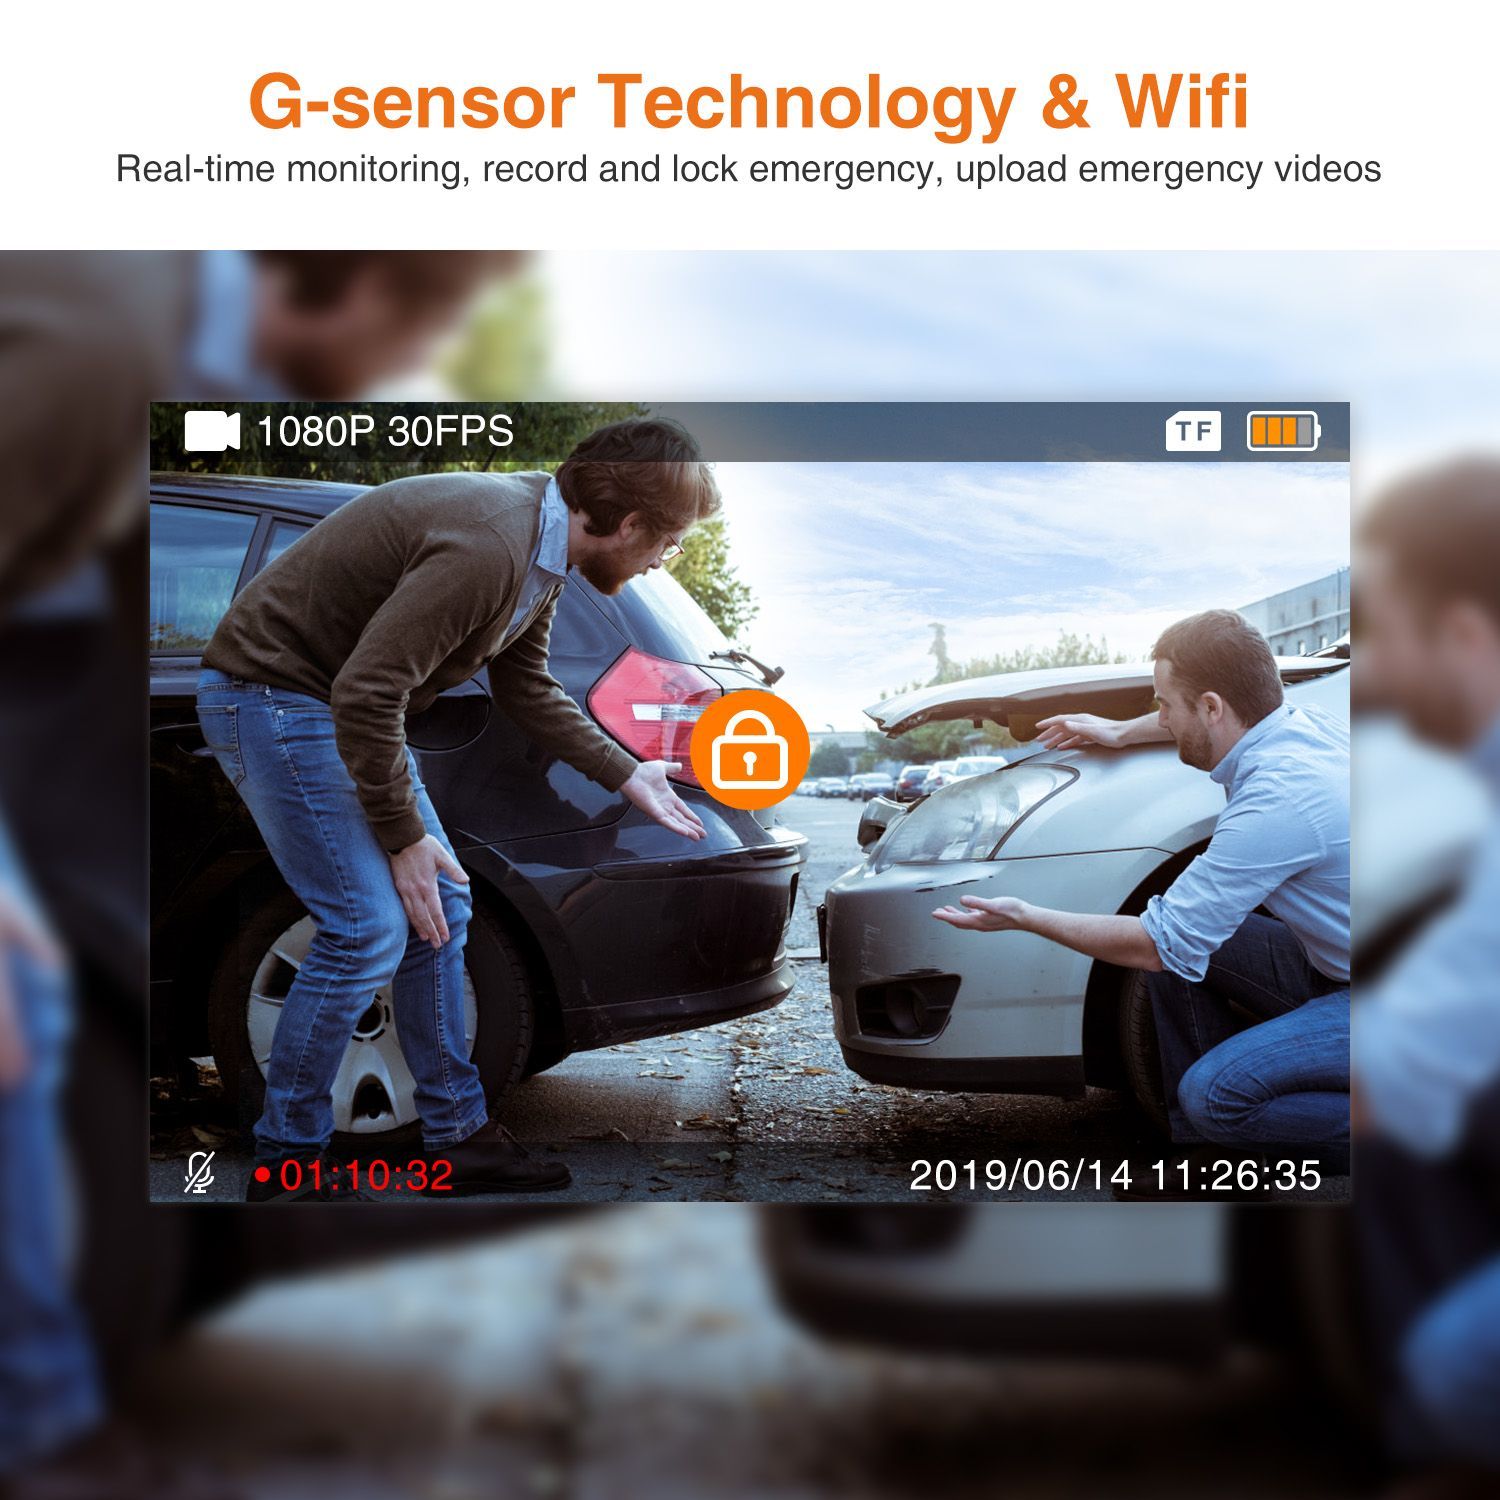 ThiEYE-Safeel-Zero-Dash-Camera-Automobile-Data-Recorder-Car-WiFi-DVR--Real-HD-1080P-170-Wide-Angle-W-1528888